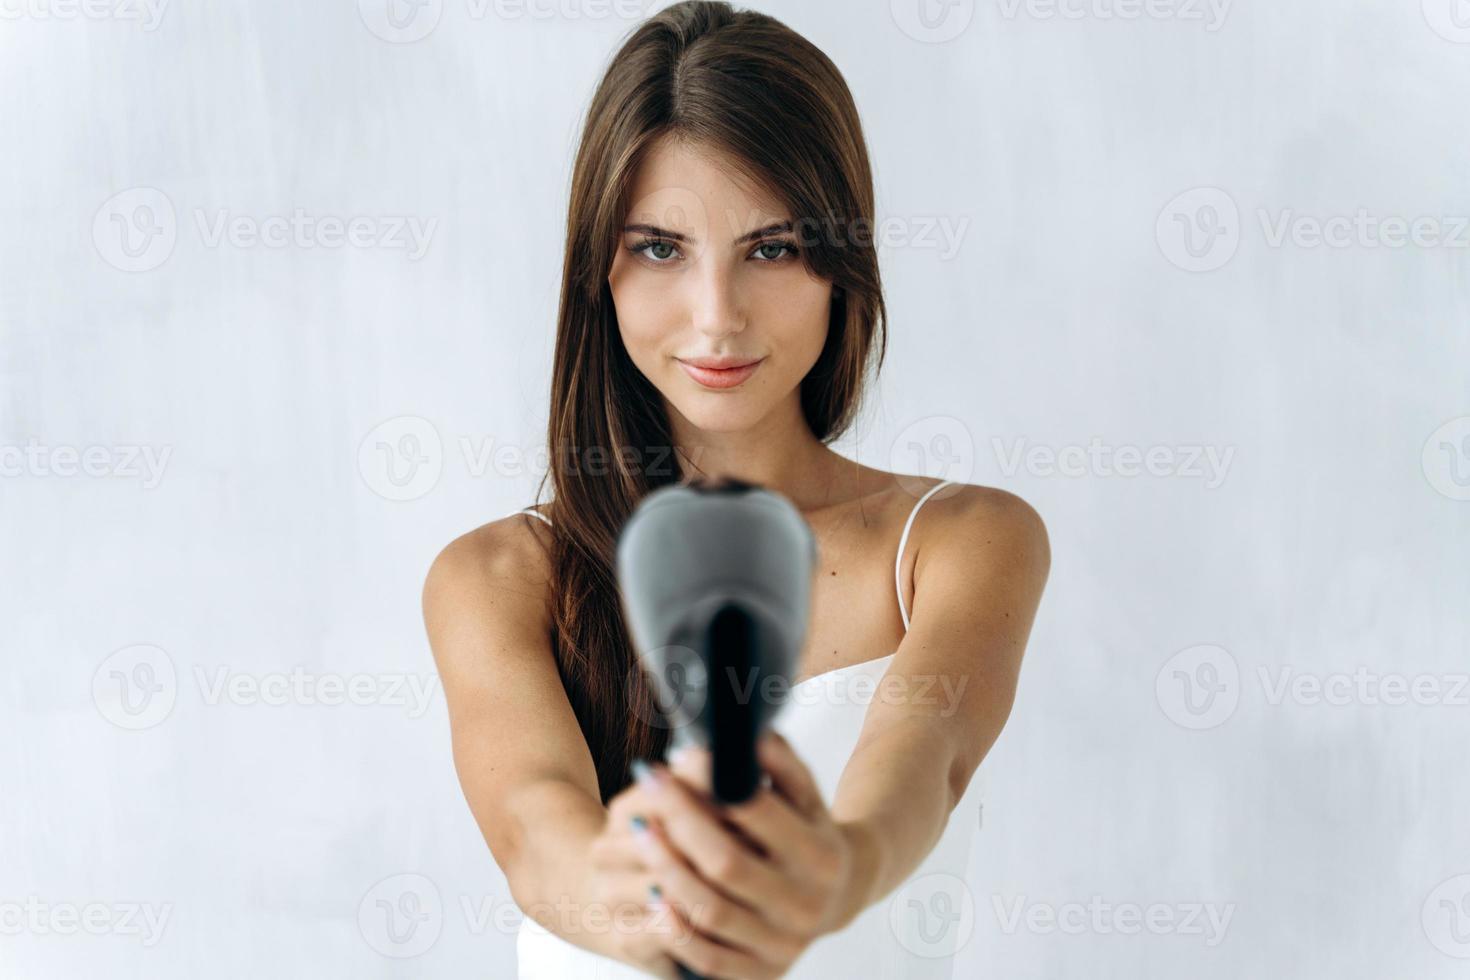 soin des cheveux. portrait de la jolie jeune femme posant pour la caméra avec un sèche-cheveux tout en le tenant comme une arme à feu. se concentrer sur les mains avec un sèche-linge photo